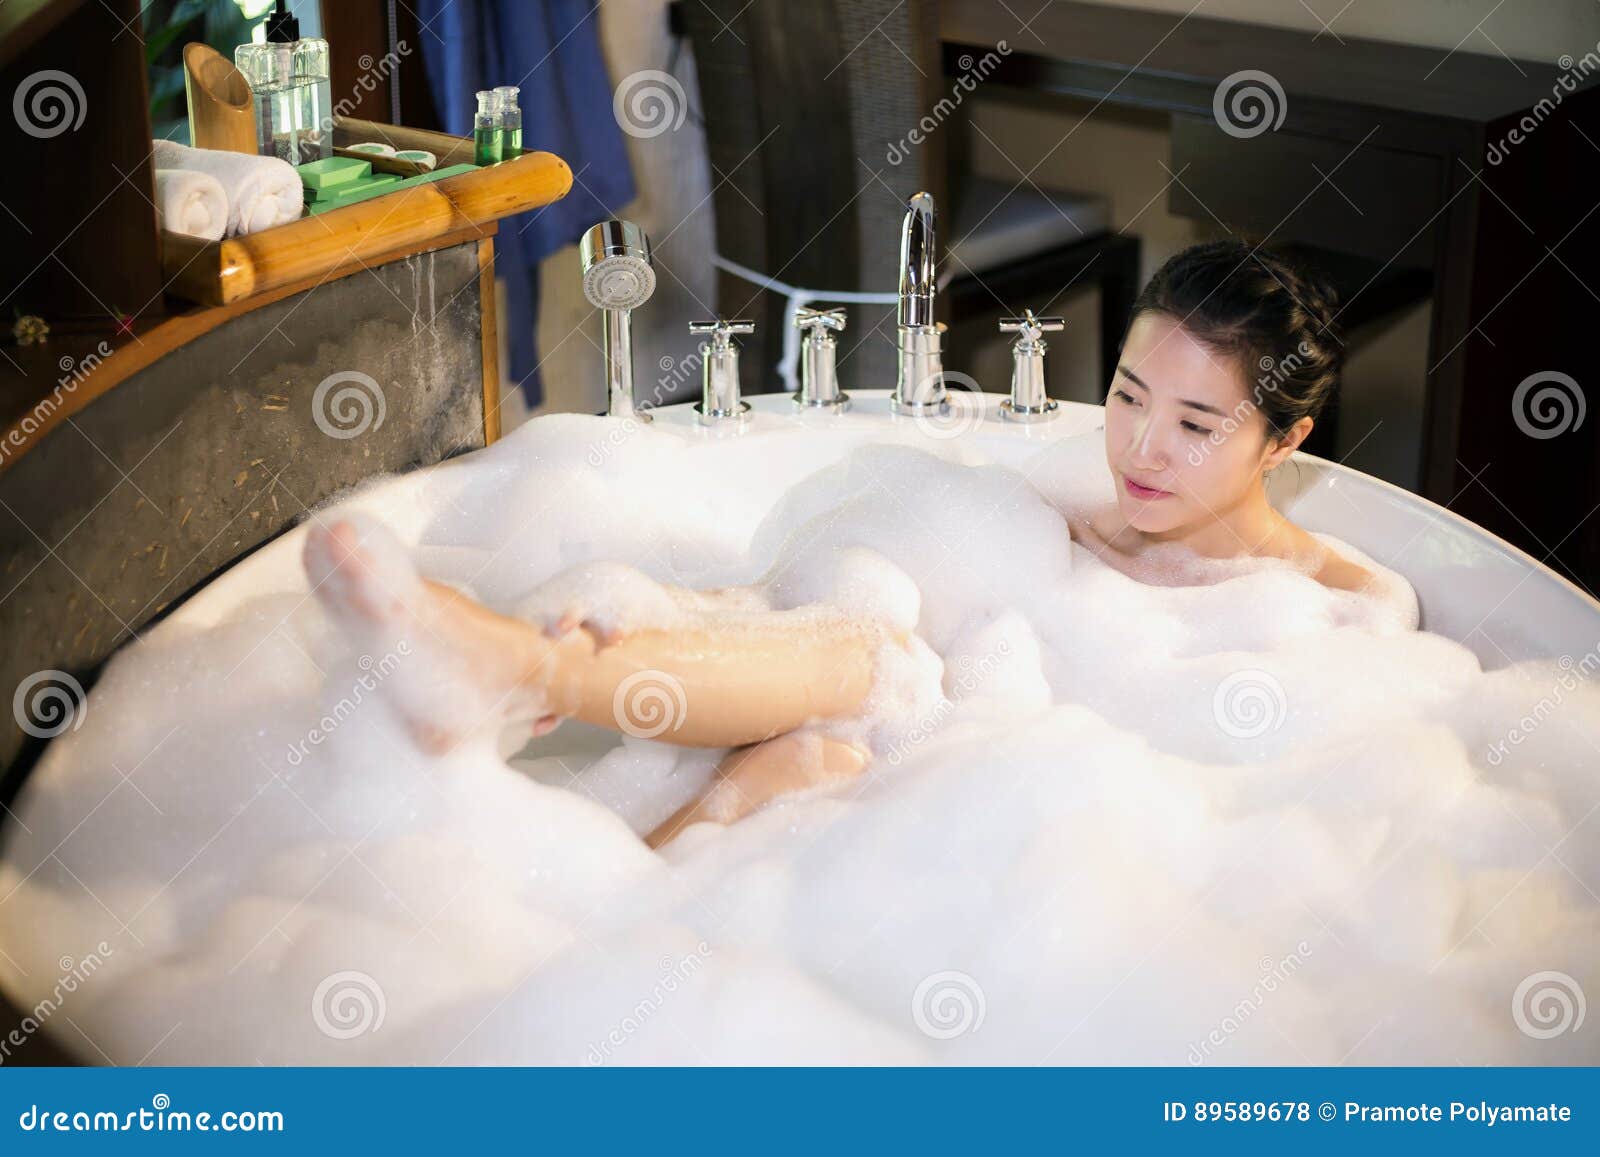 Купается в ванной 18. Китайка в ванной. Азиатка купается в ванной. В пенной ванне азиатки.